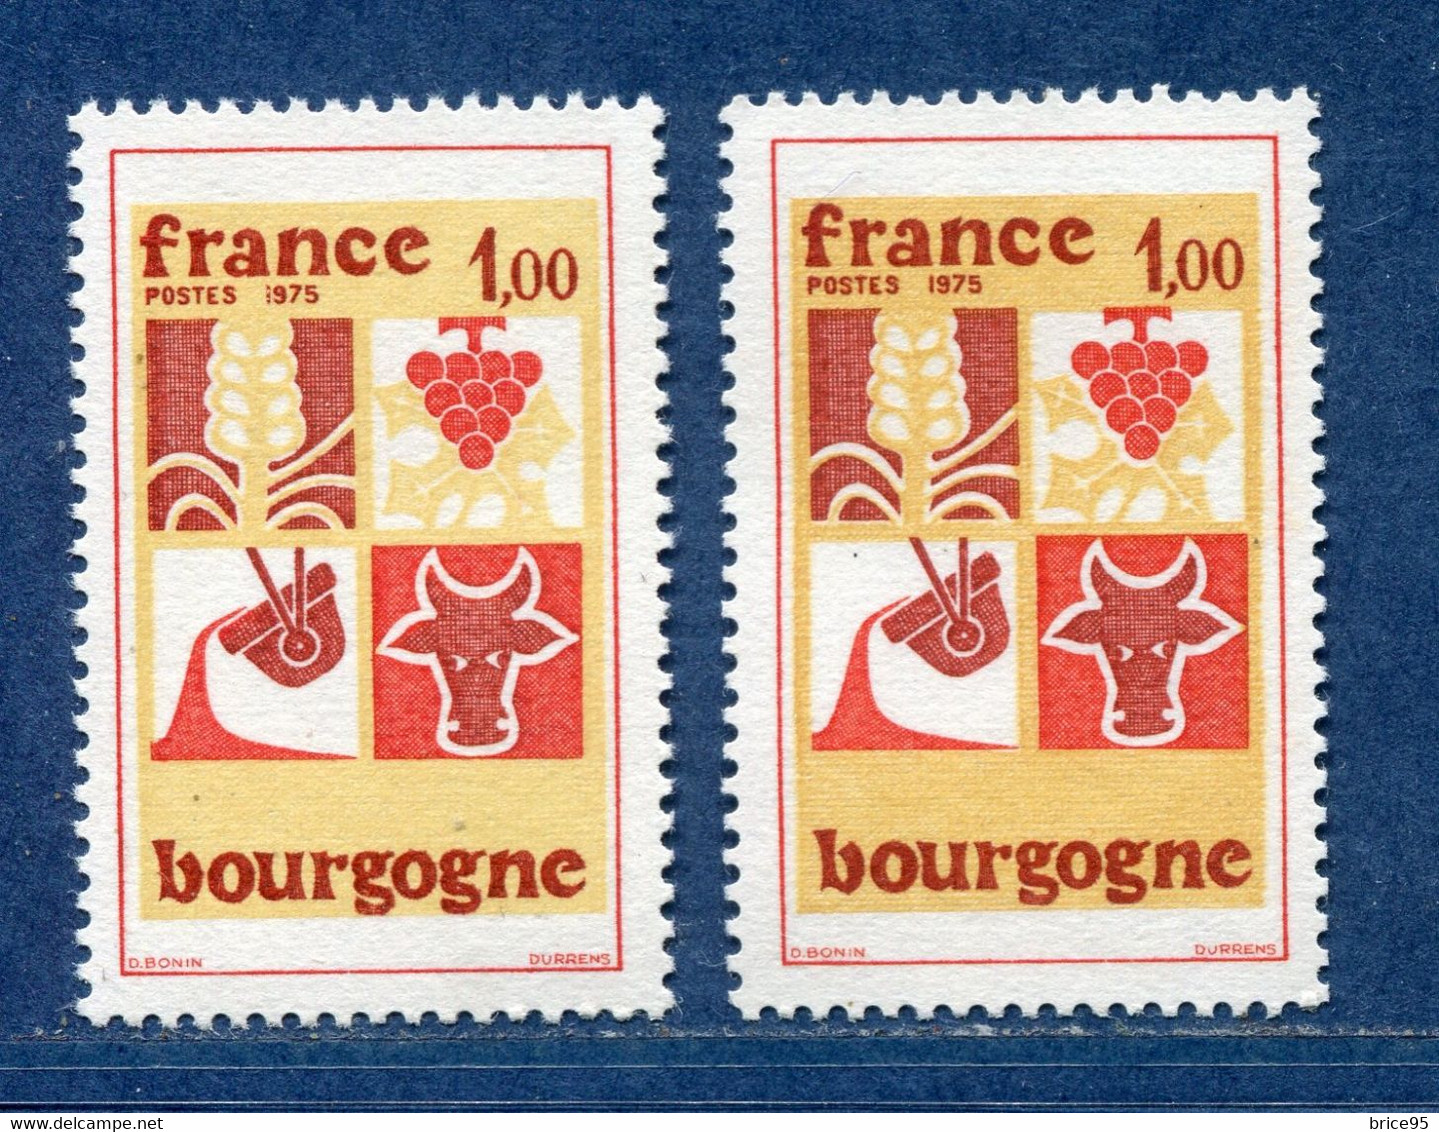 ⭐ France - Variété - YT N° 1848 - Couleurs - Pétouille - Neuf Sans Charnière - 1975 ⭐ - Unused Stamps